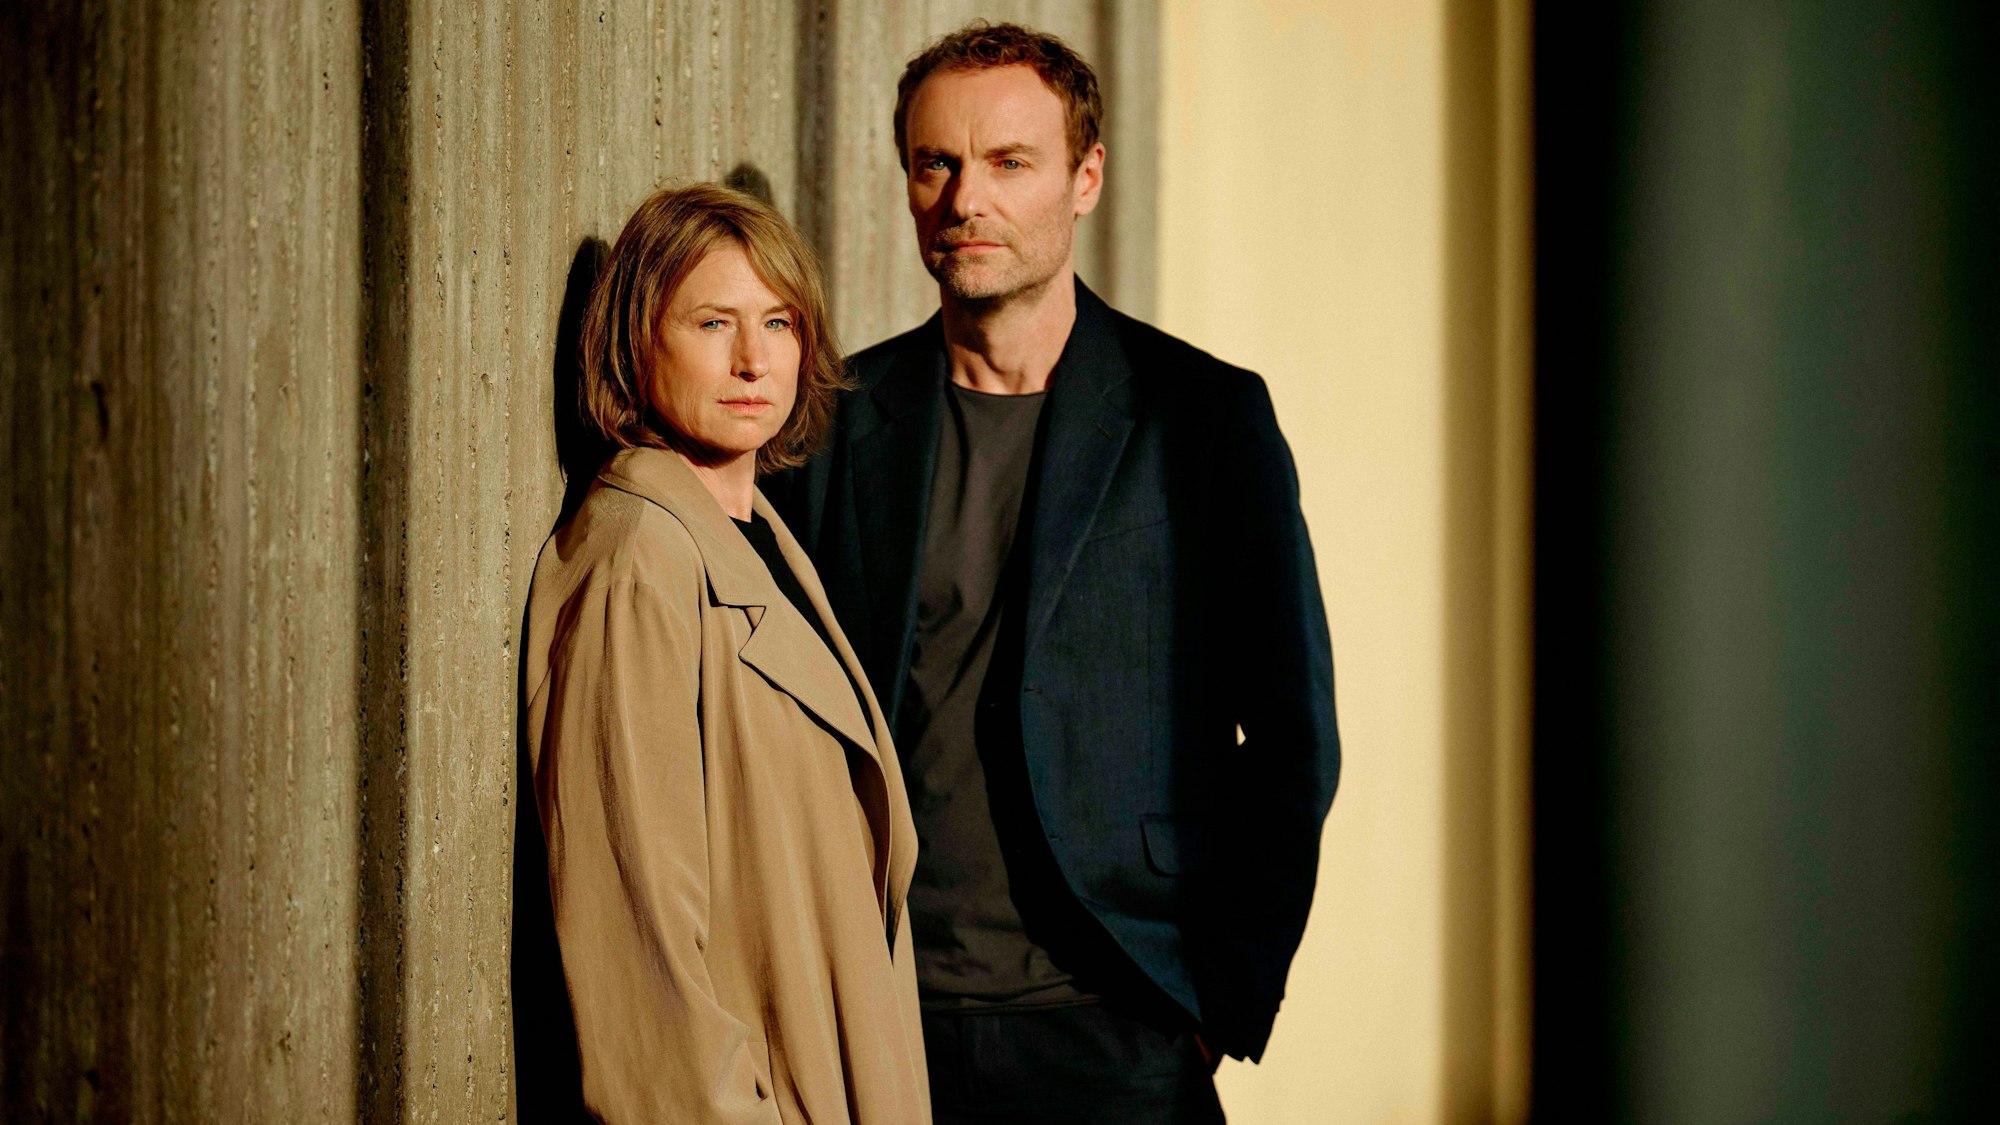 Die Schauspieler Corinna Harfouch als Susanne Bonard und Mark Waschke als Kriminalhauptkommissar Robert Karow bei den Dreharbeiten für den ersten gemeinsamen Berliner „Tatort“. Sie lehnen an einer Wand und schauen ernst.